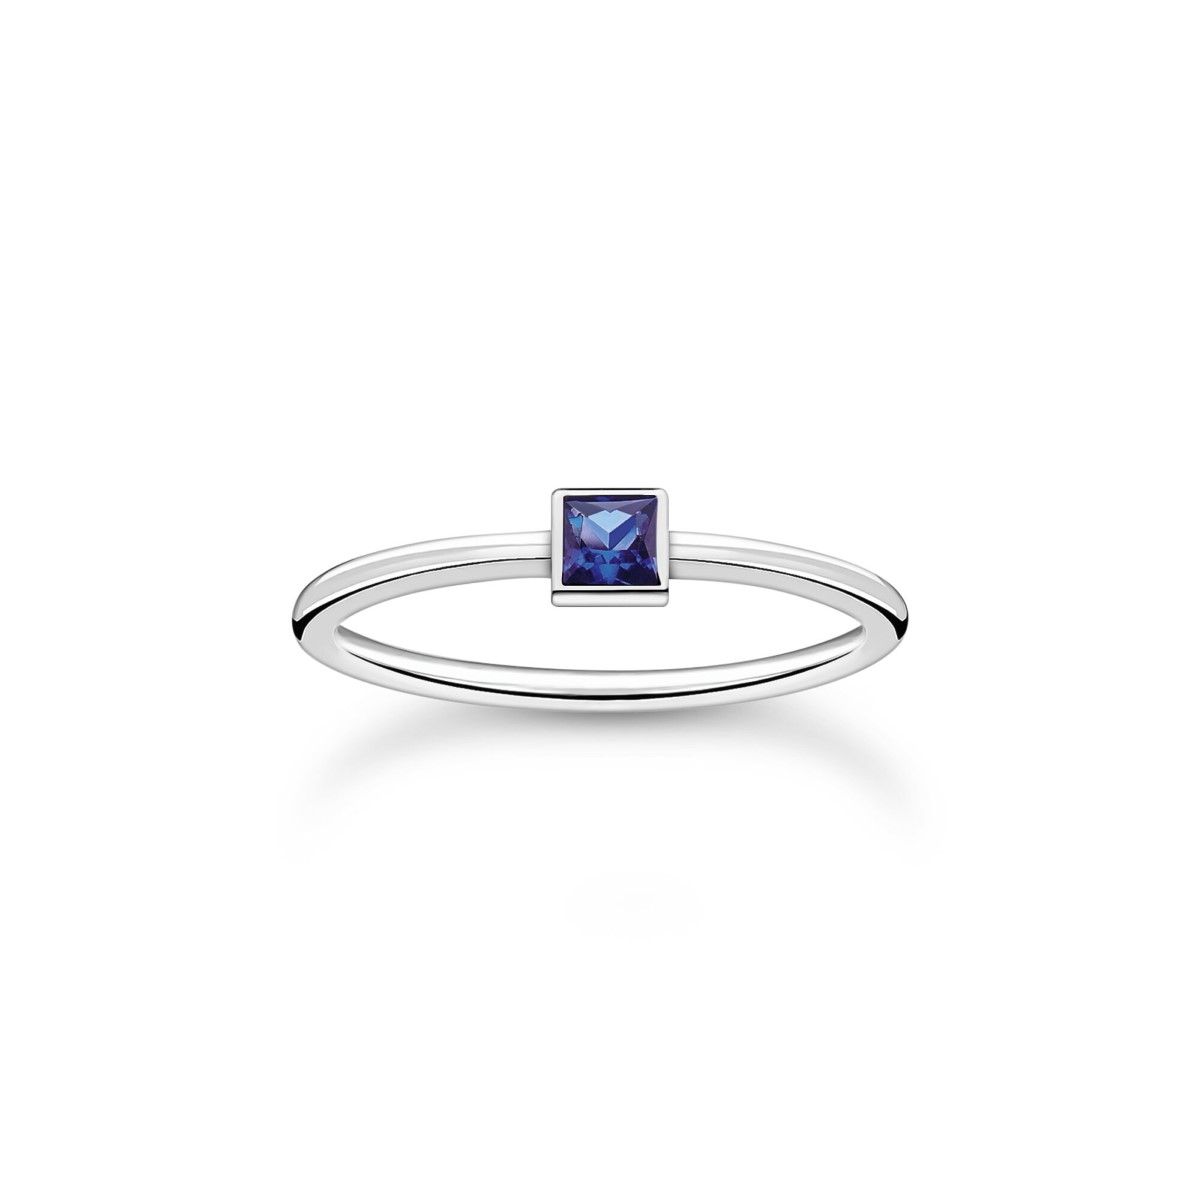 Thomas Sabo Blue Square Stone Ring TR2395-699-32